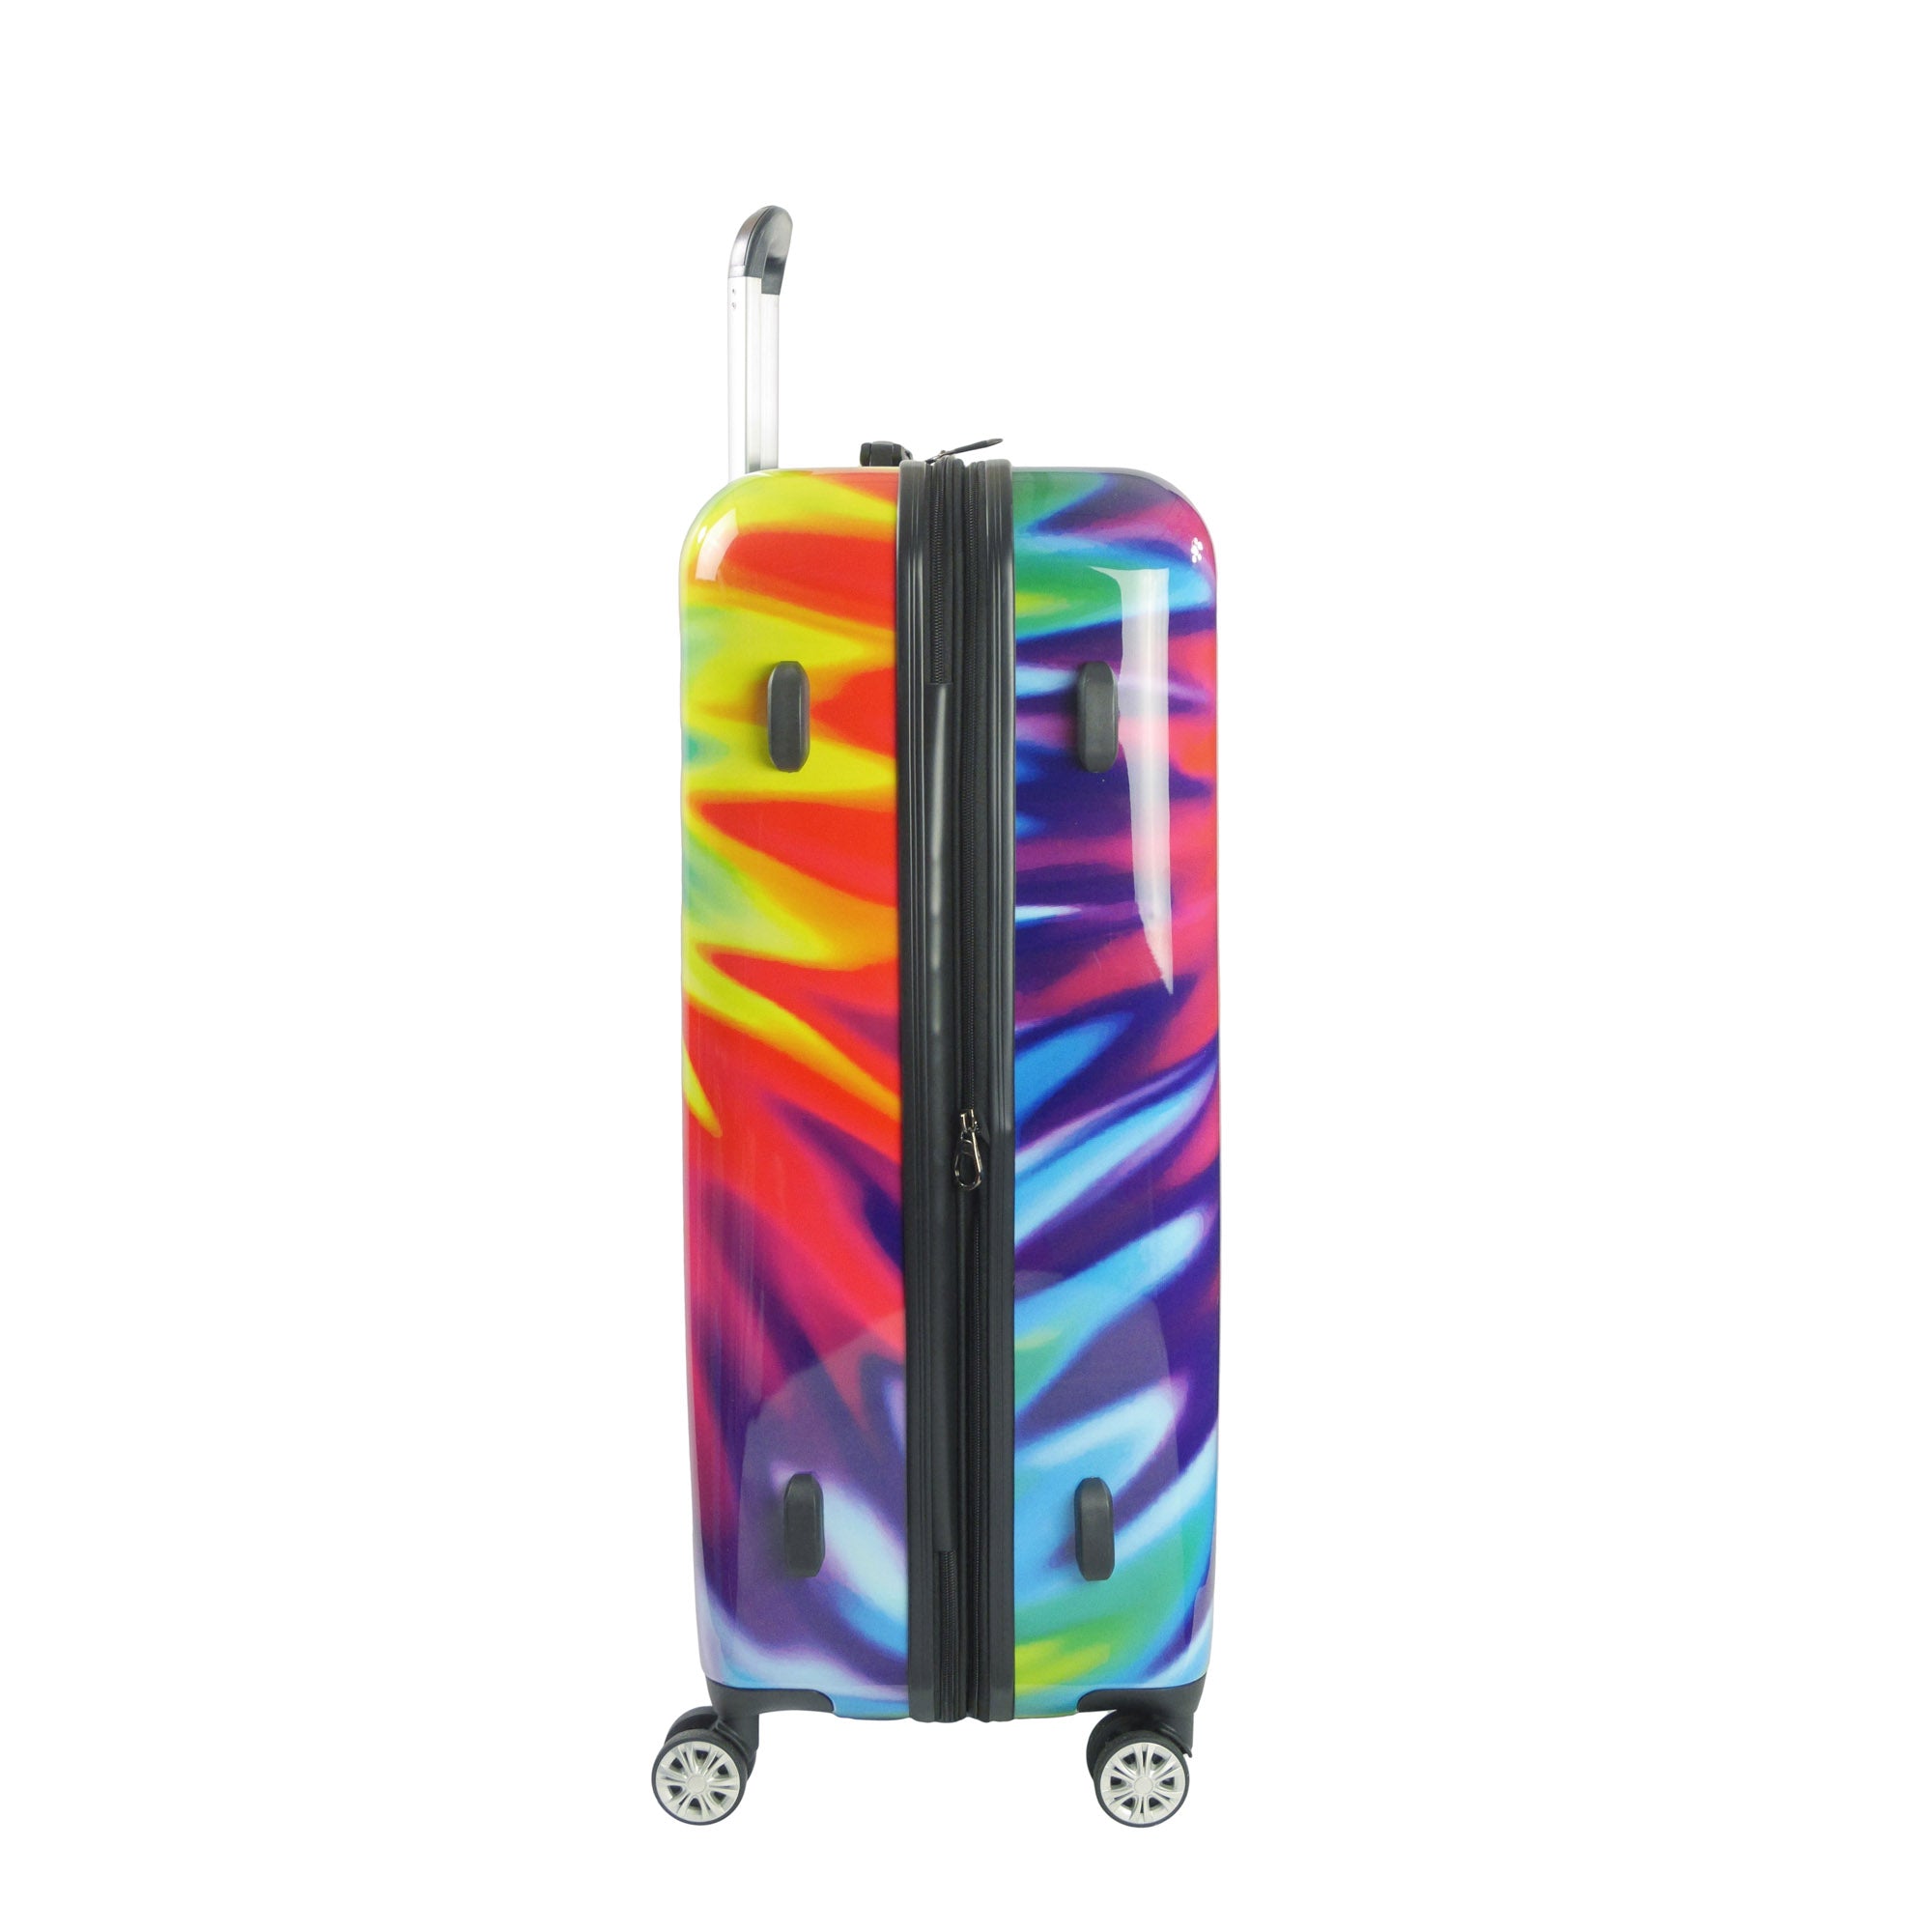 FUL Tie-dye Swirl 3 Piece Hardside Spinner Luggage Set